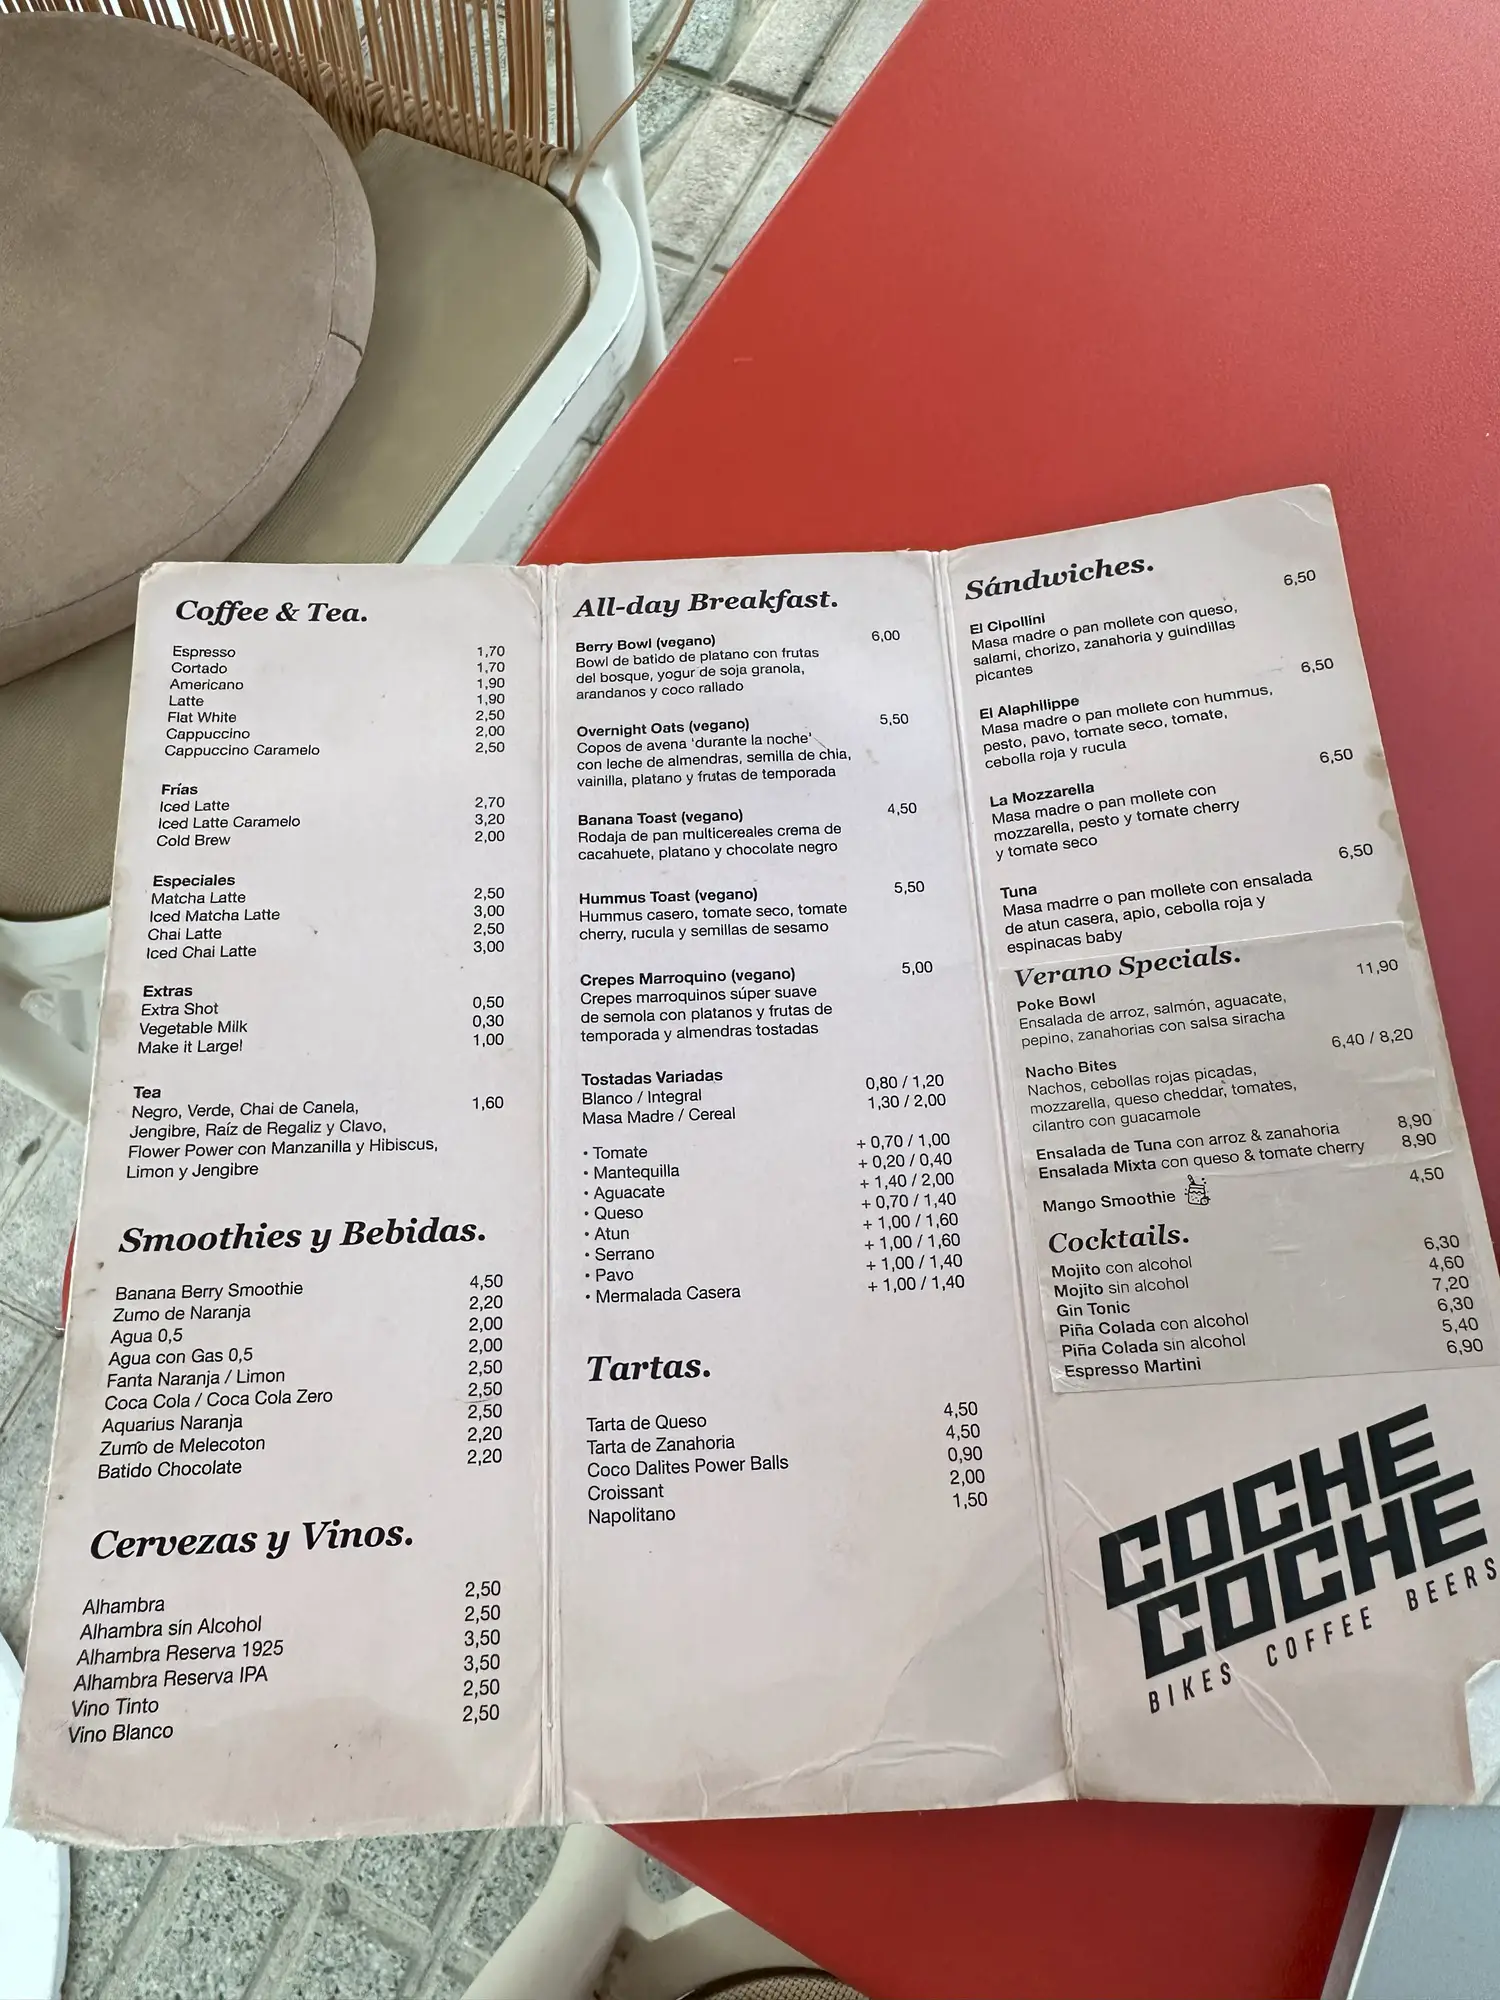 Coche Coche's menu in La herradura showcases numerous vegan options